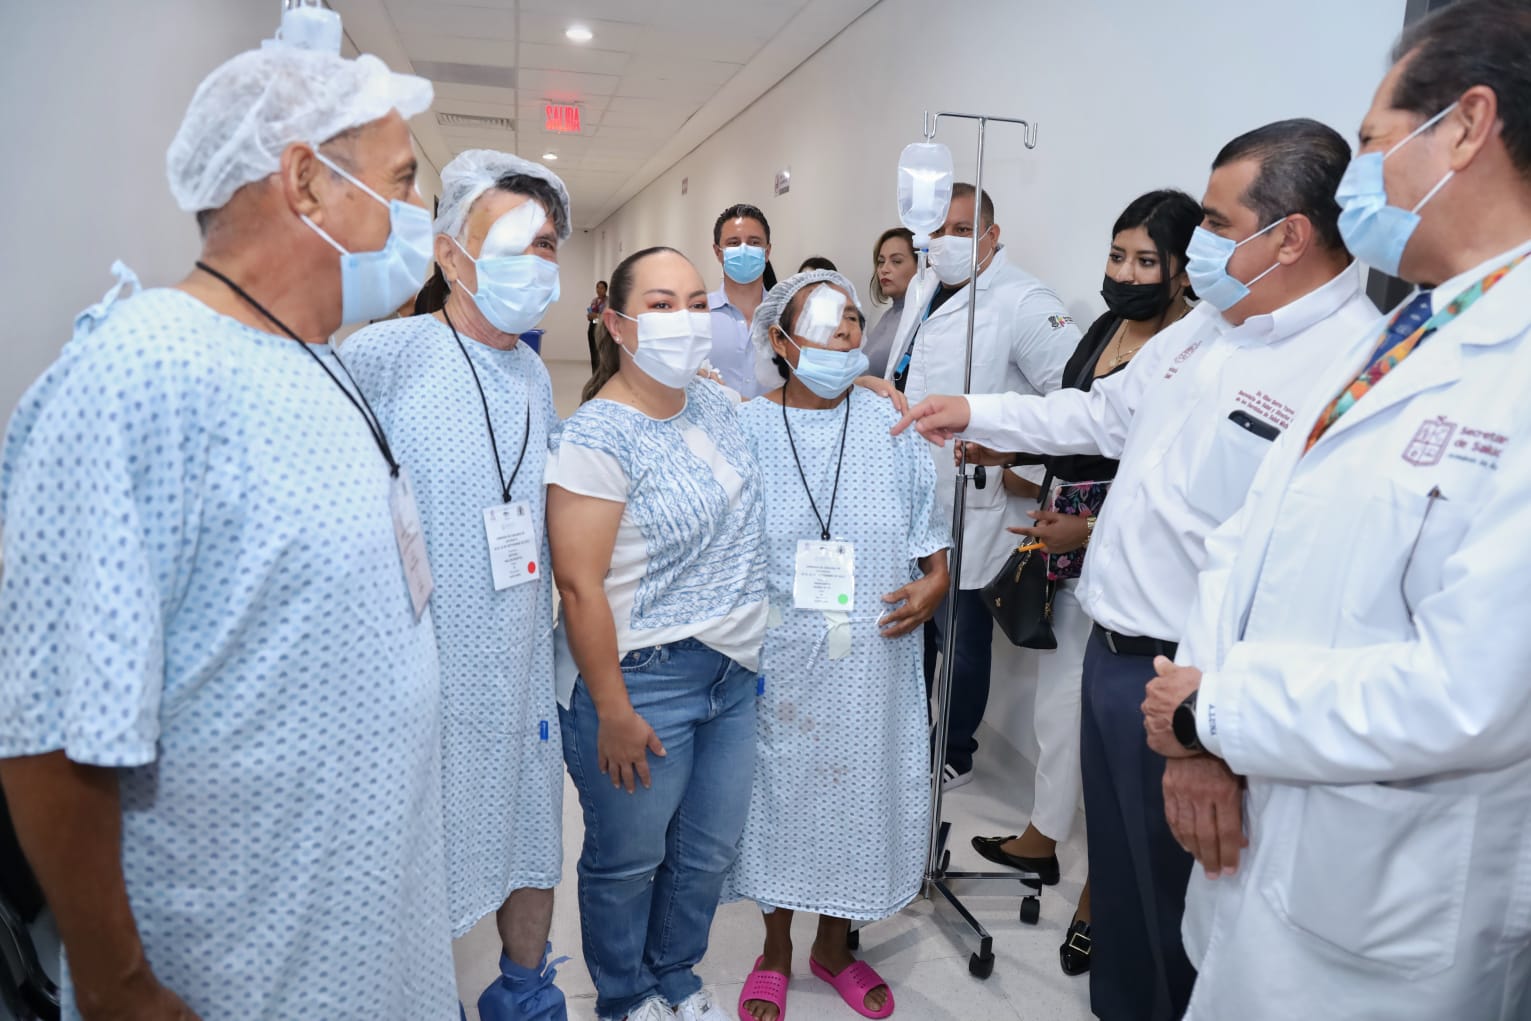 Margarita Núñez recupera la vista tras recibir cirugía gratuita de la SSM